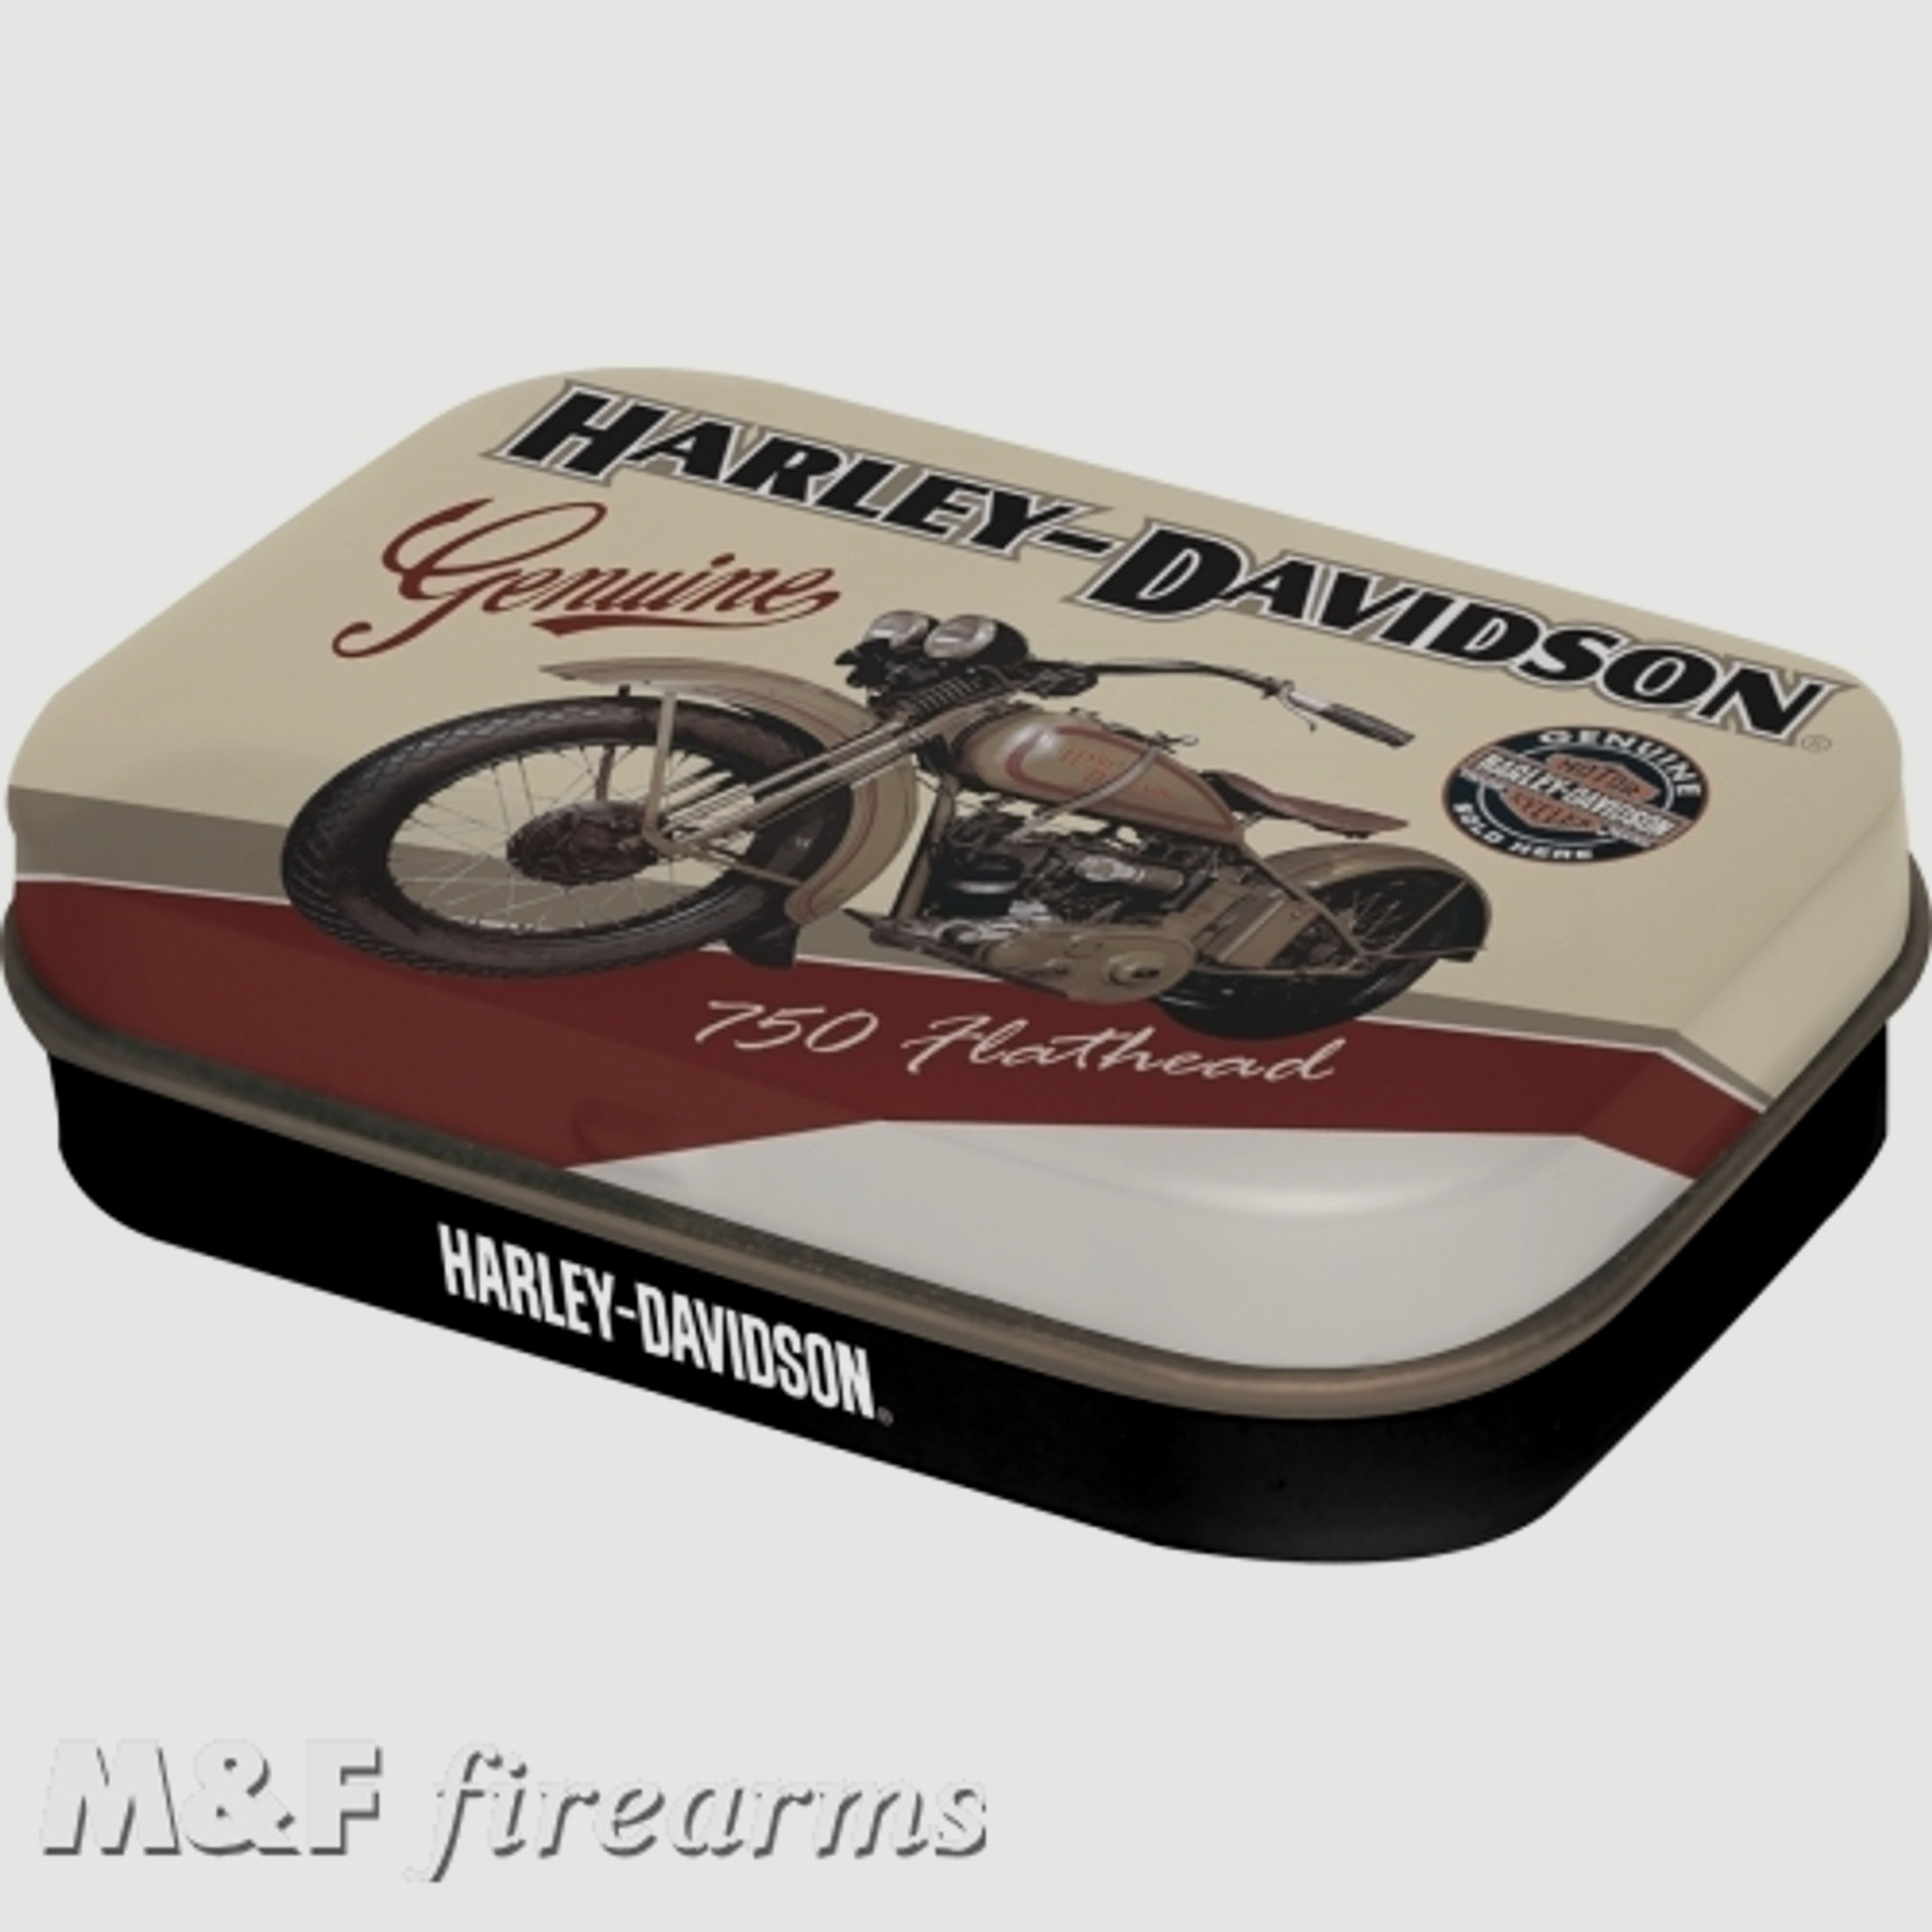 Harley-Davidson "Flathead" Pillendose ca. 6x4x2cm von Nostalgic-Art